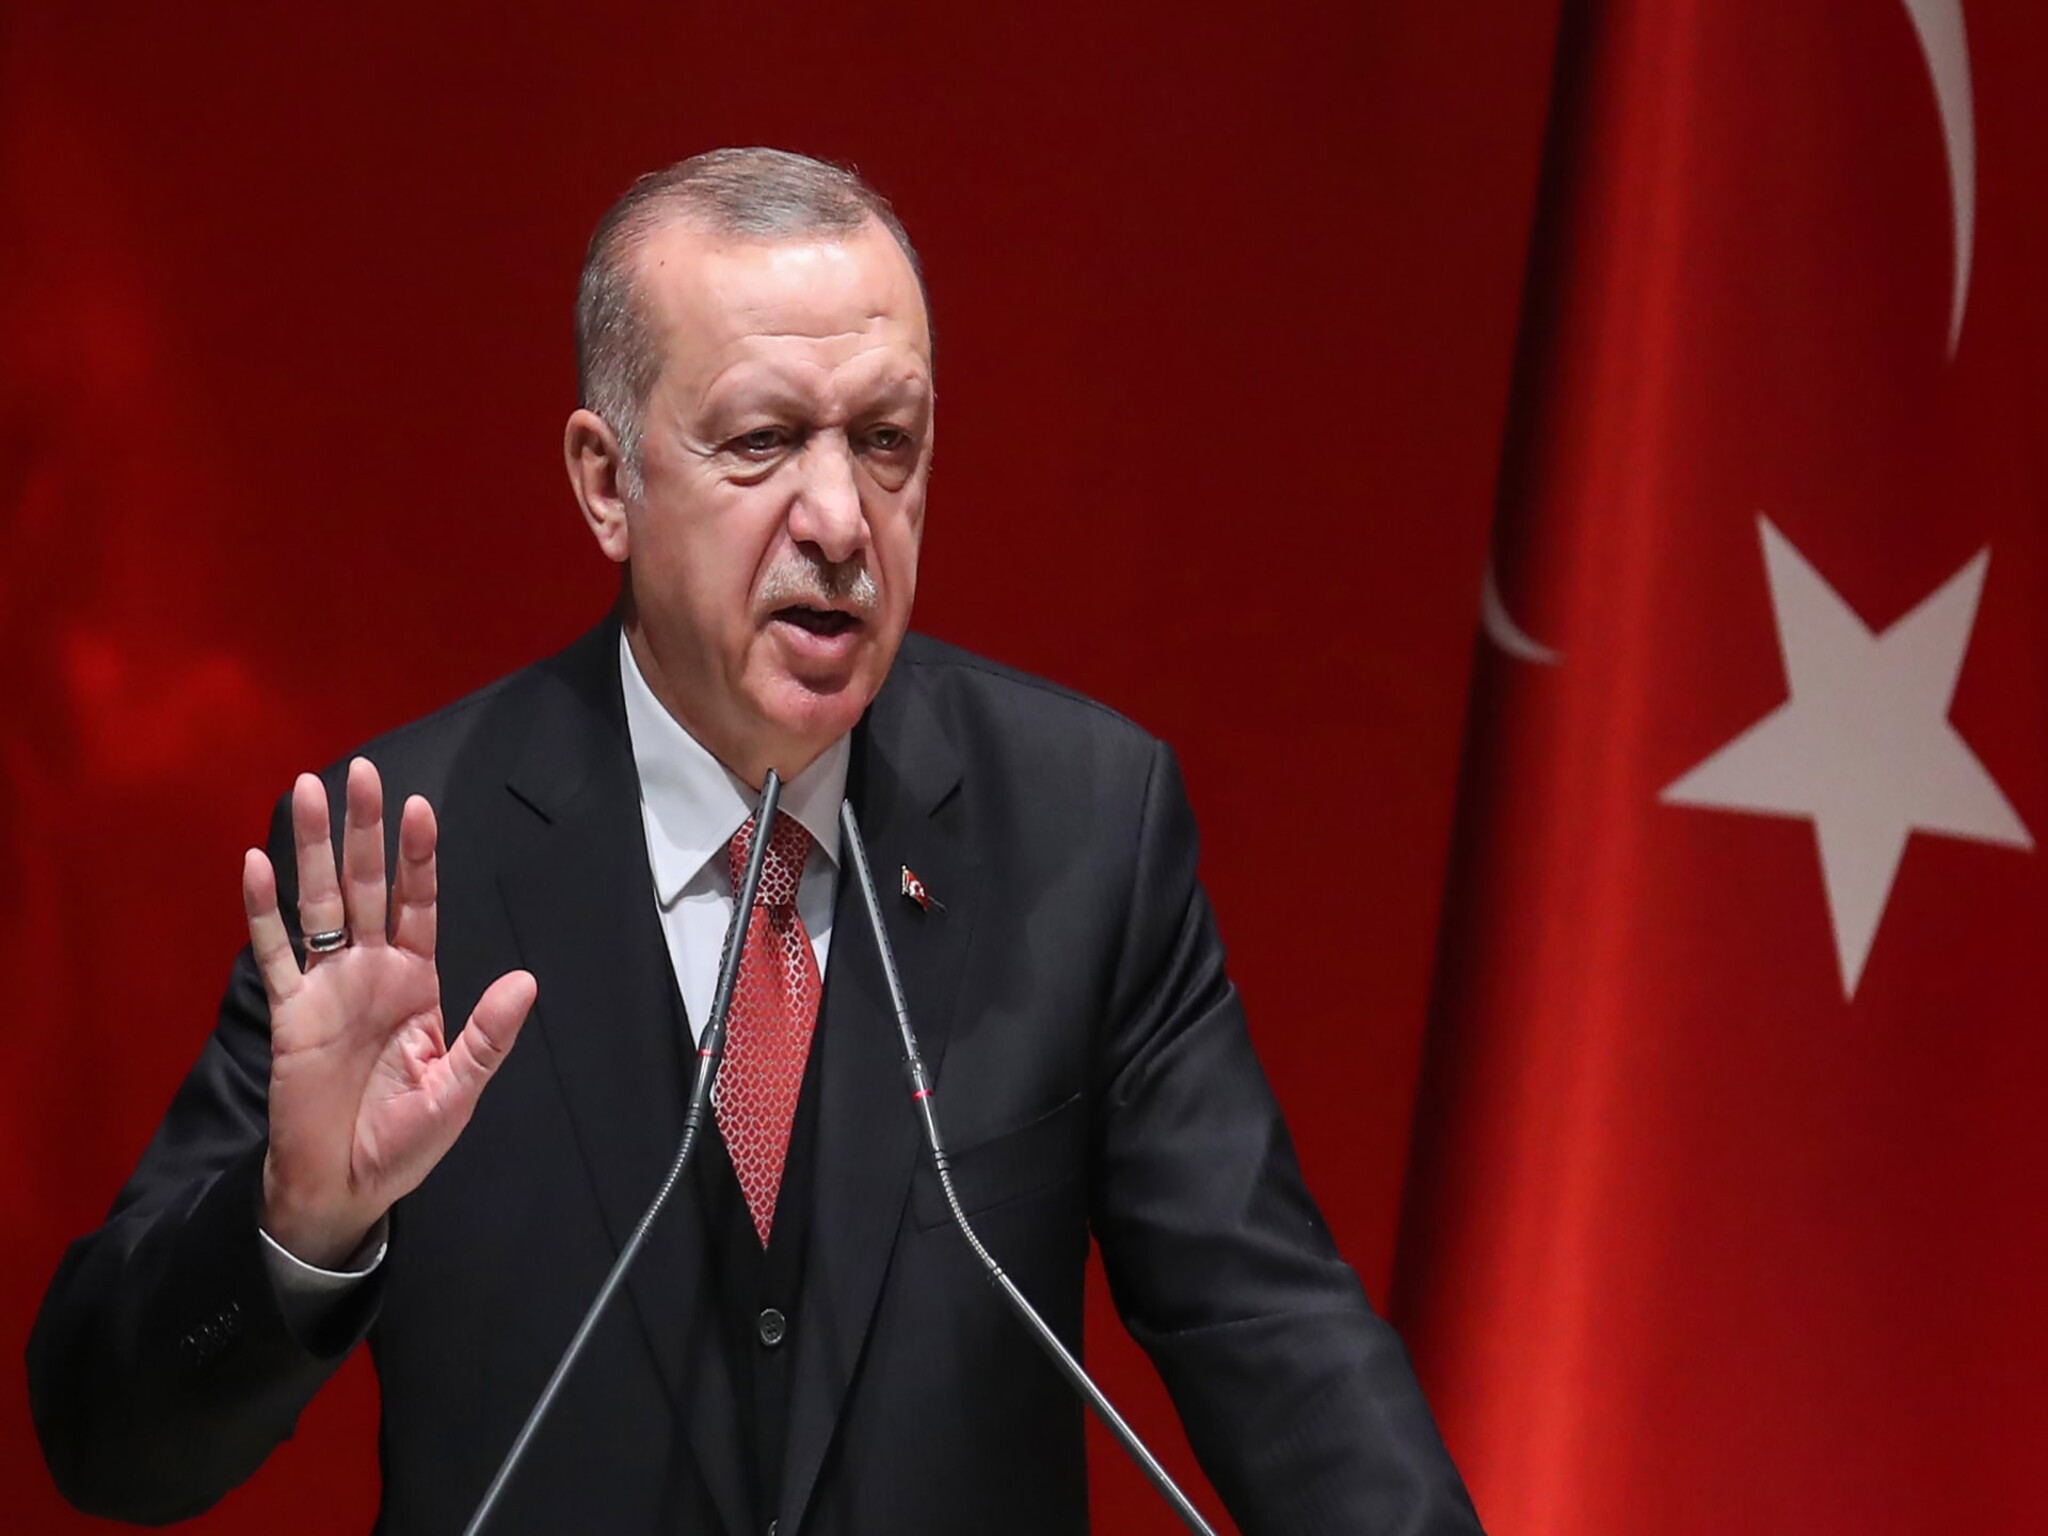 الرئيس التركي أردوغان... دموع الغرب لأجل إسرائيل نوع من الإحتيال